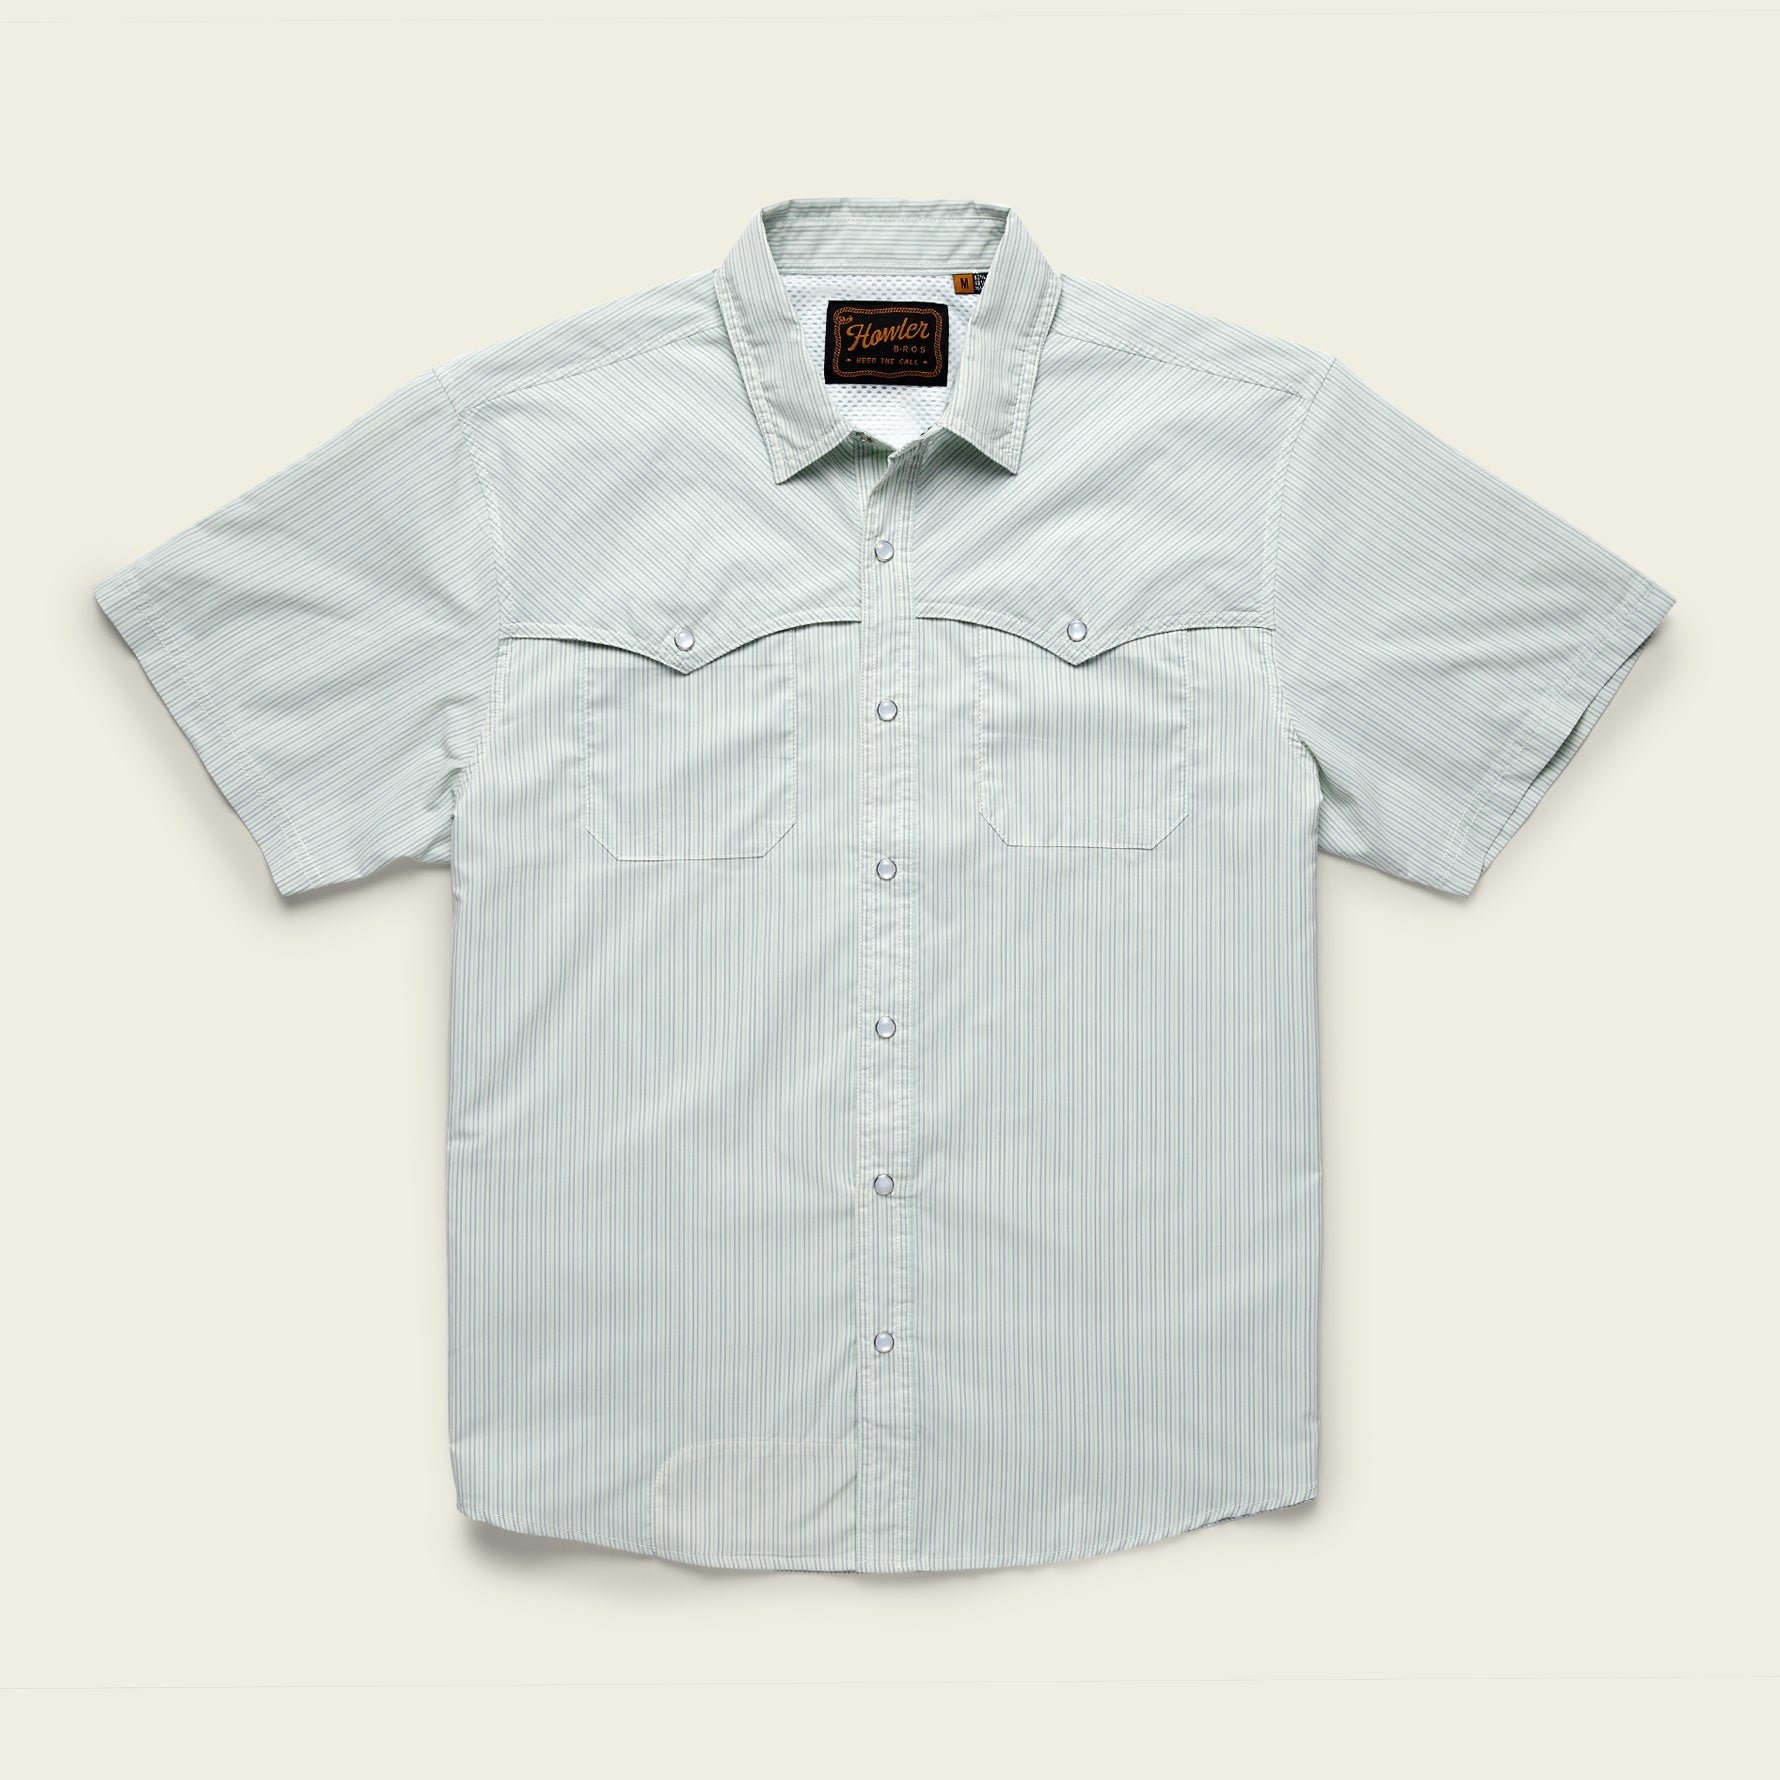 Howler Bros Open Country Tech Shirt - Pecos Stripe : Dove